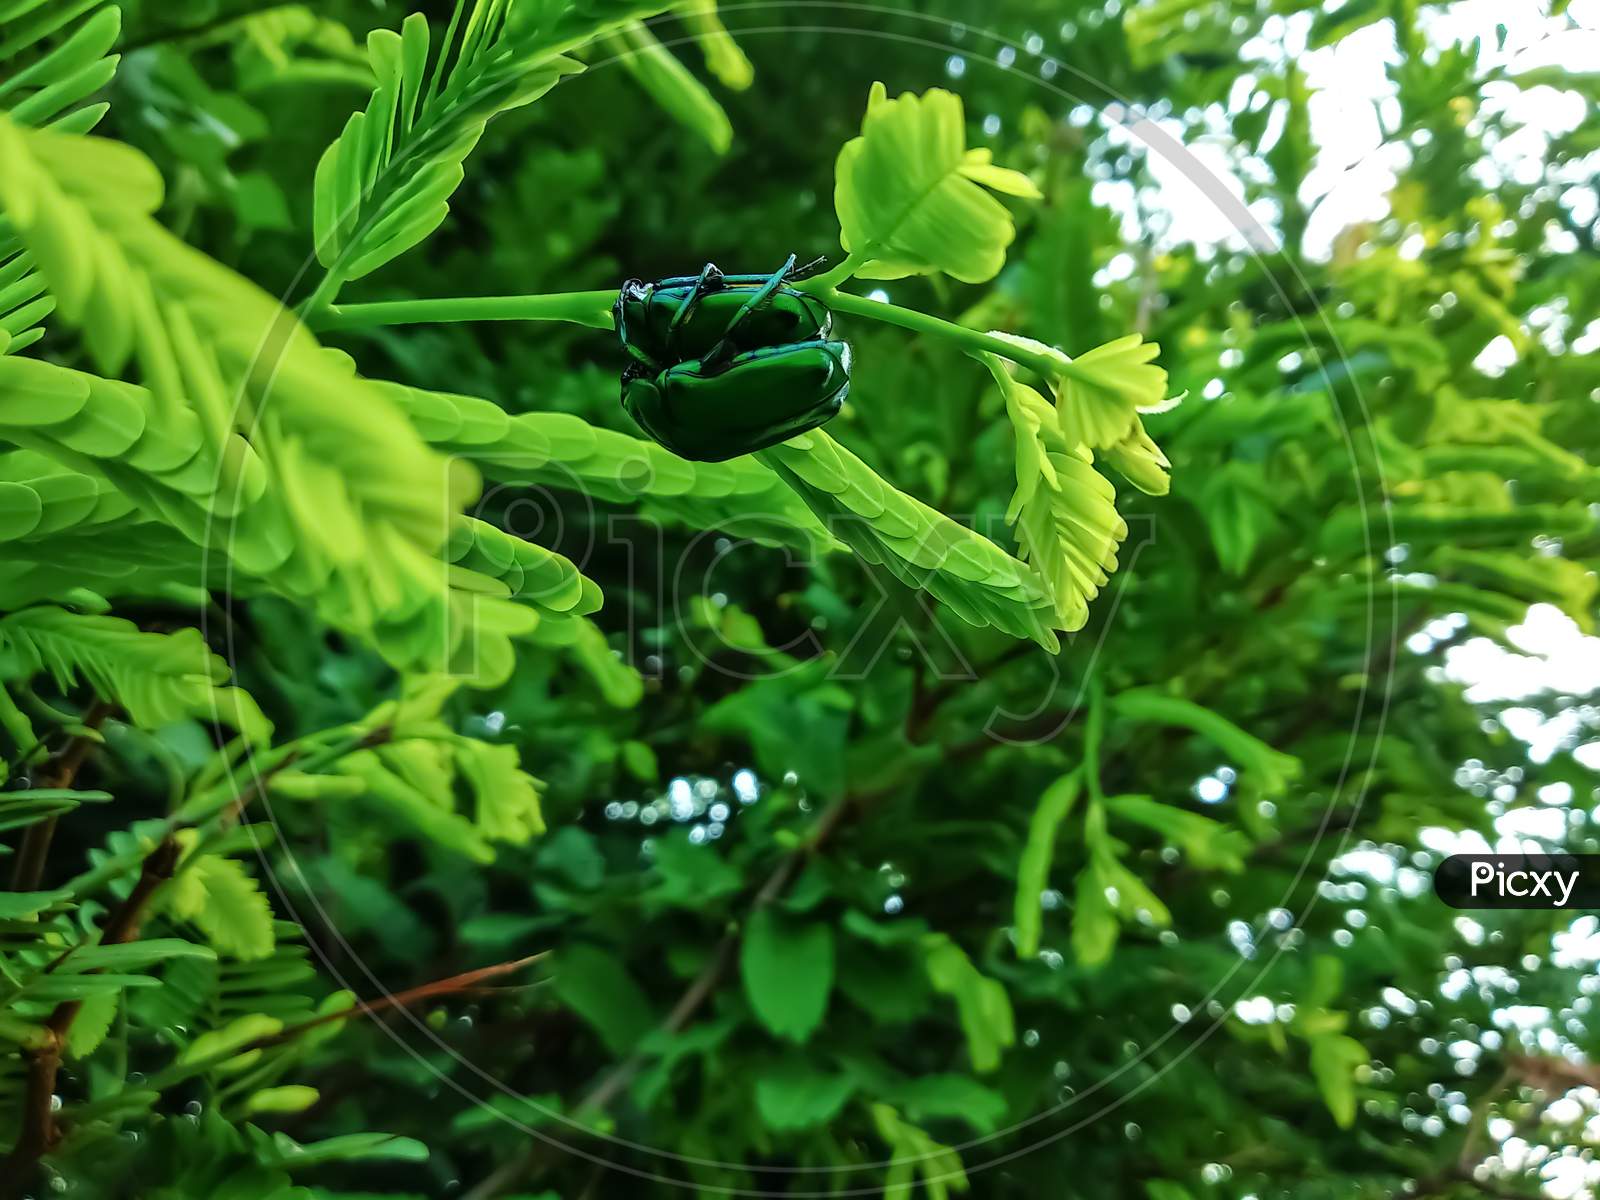 Green milkweed beetles. (Chrysochus cobaltinus)